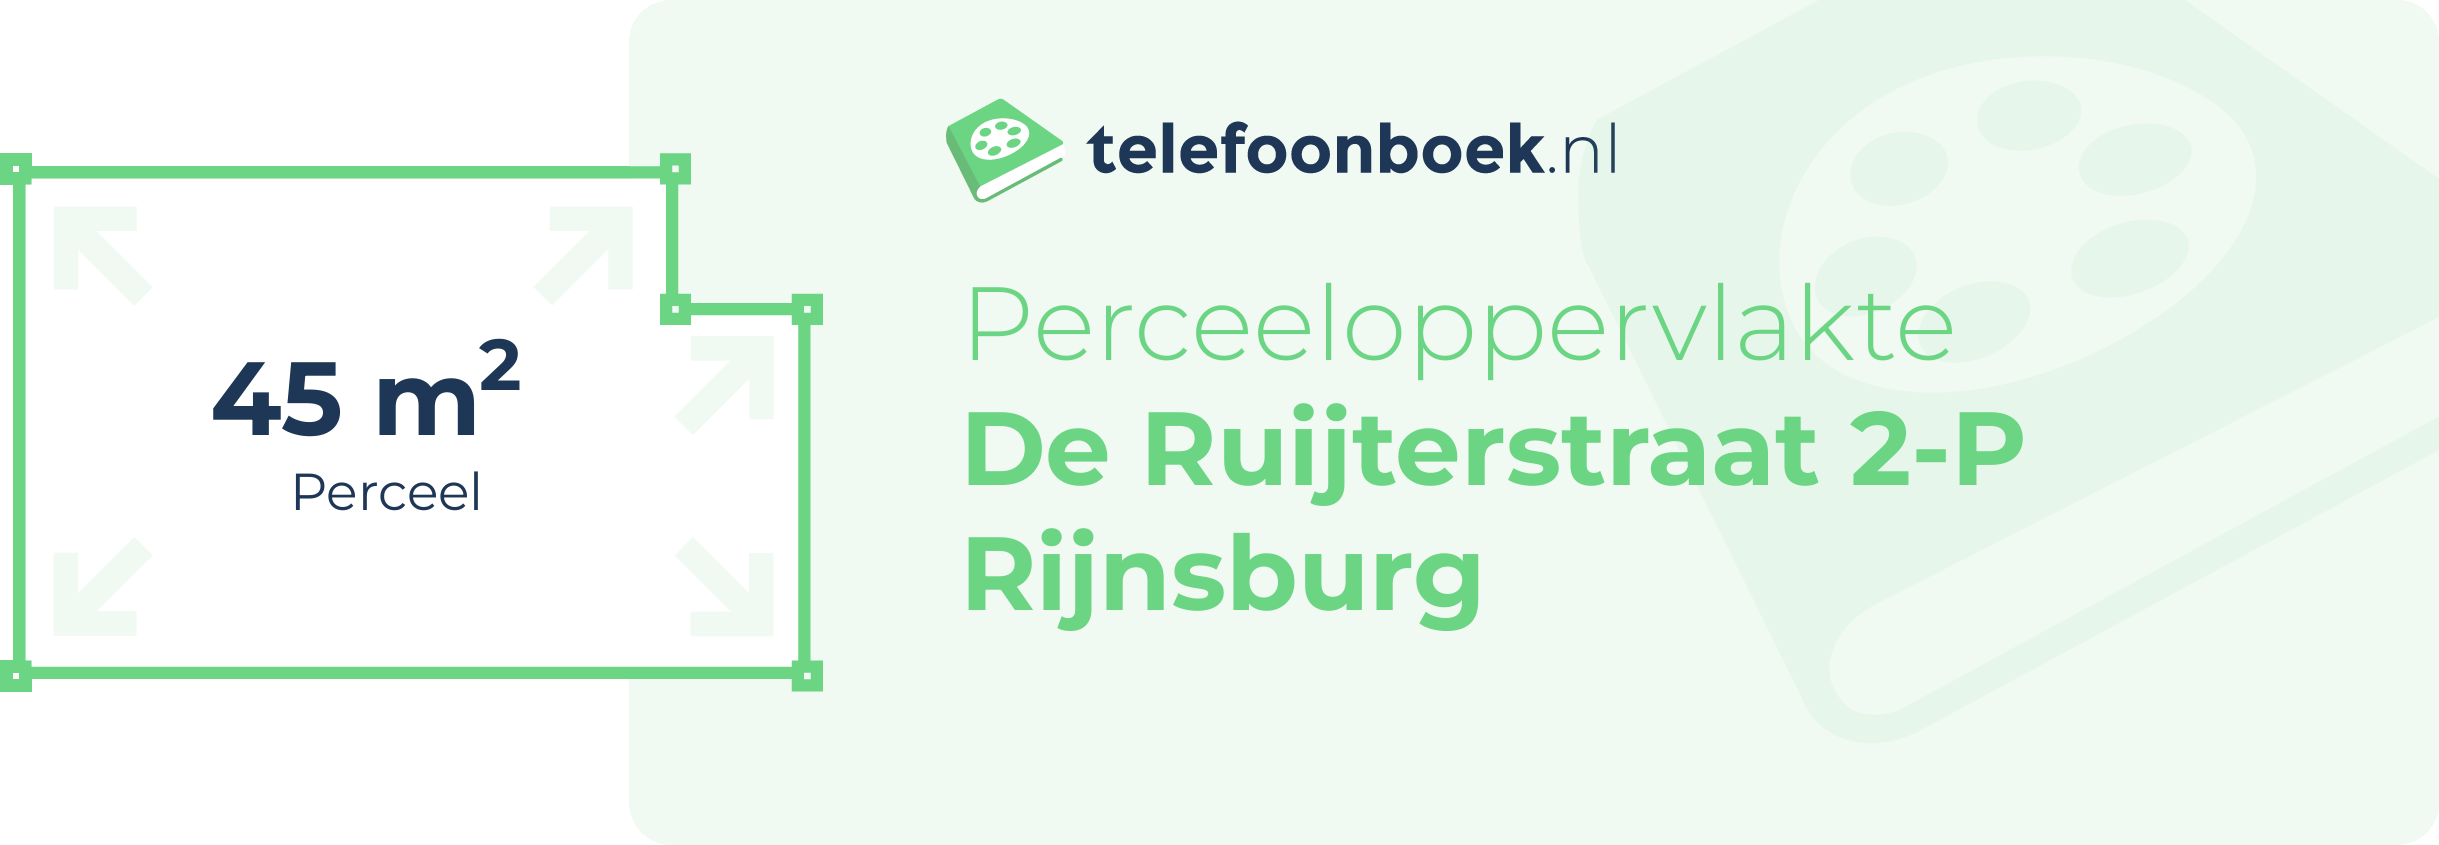 Perceeloppervlakte De Ruijterstraat 2-P Rijnsburg